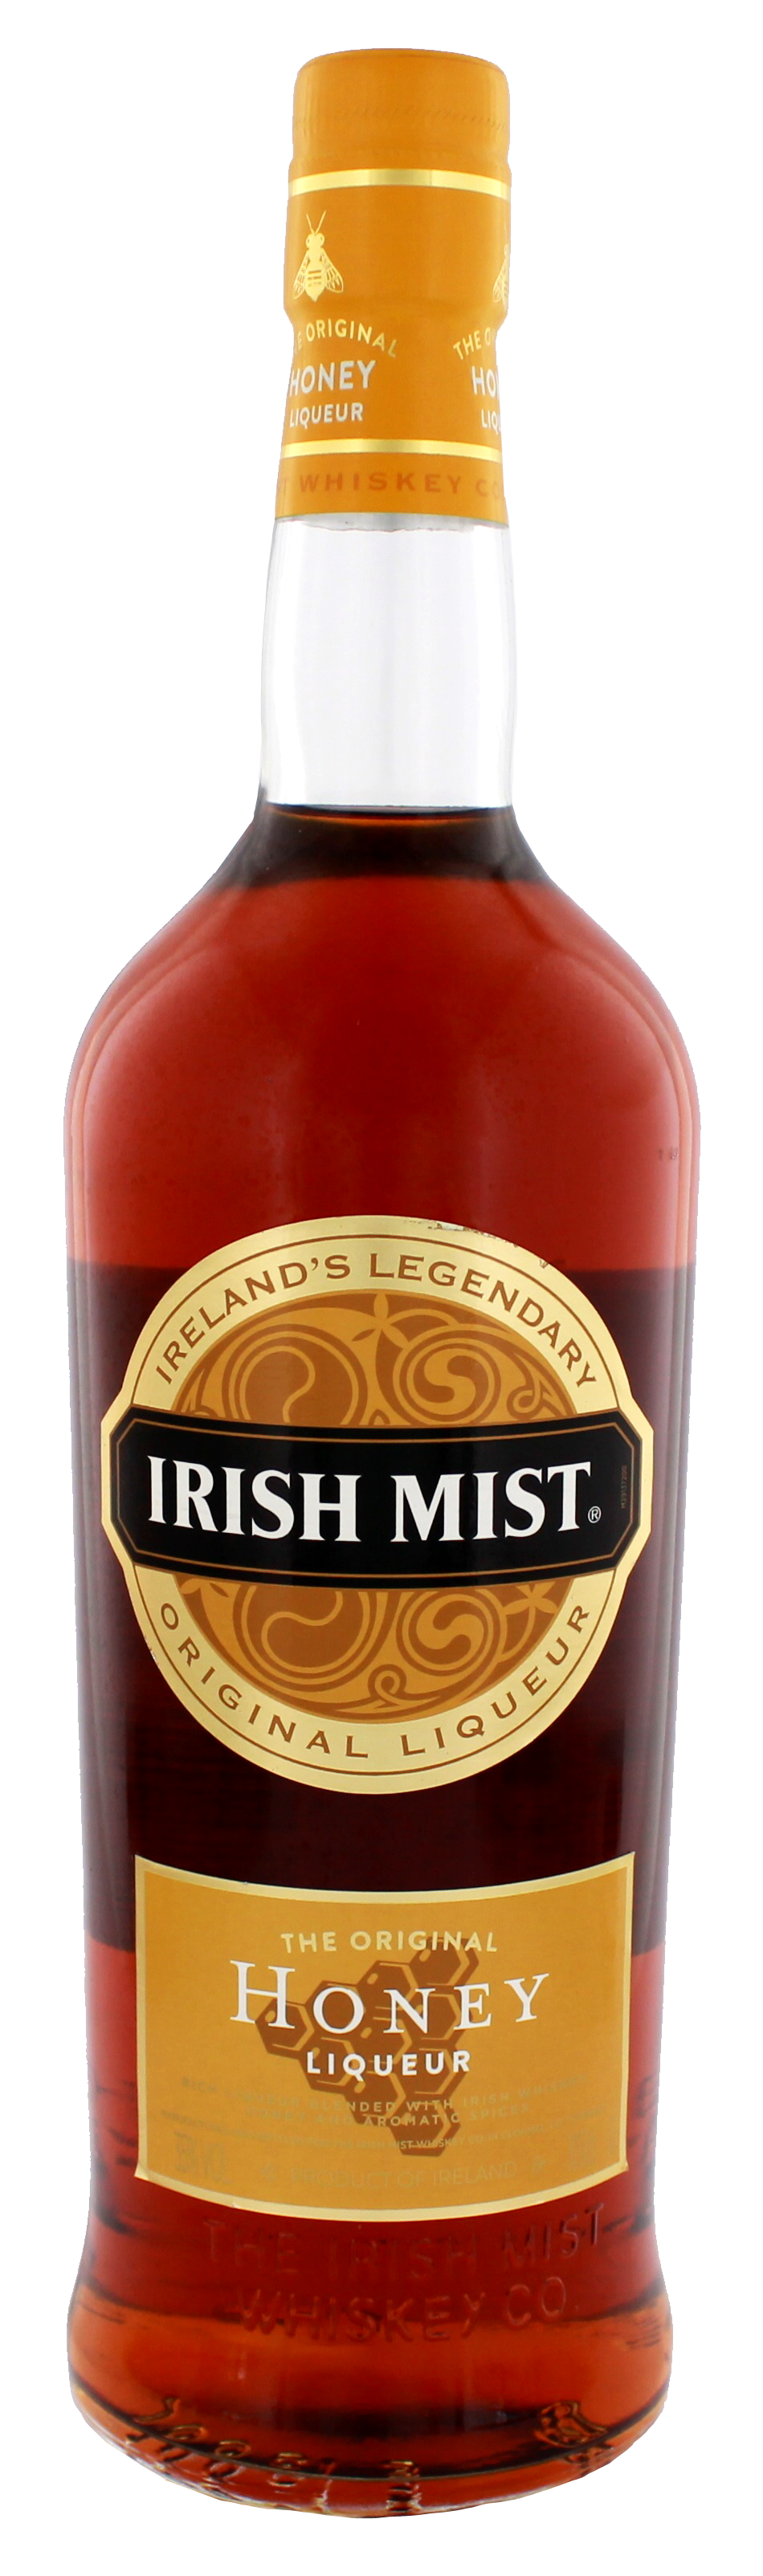 Irish Mist Whiskey Liqueur jetzt kaufen im Drinkology Online Shop! | Likör